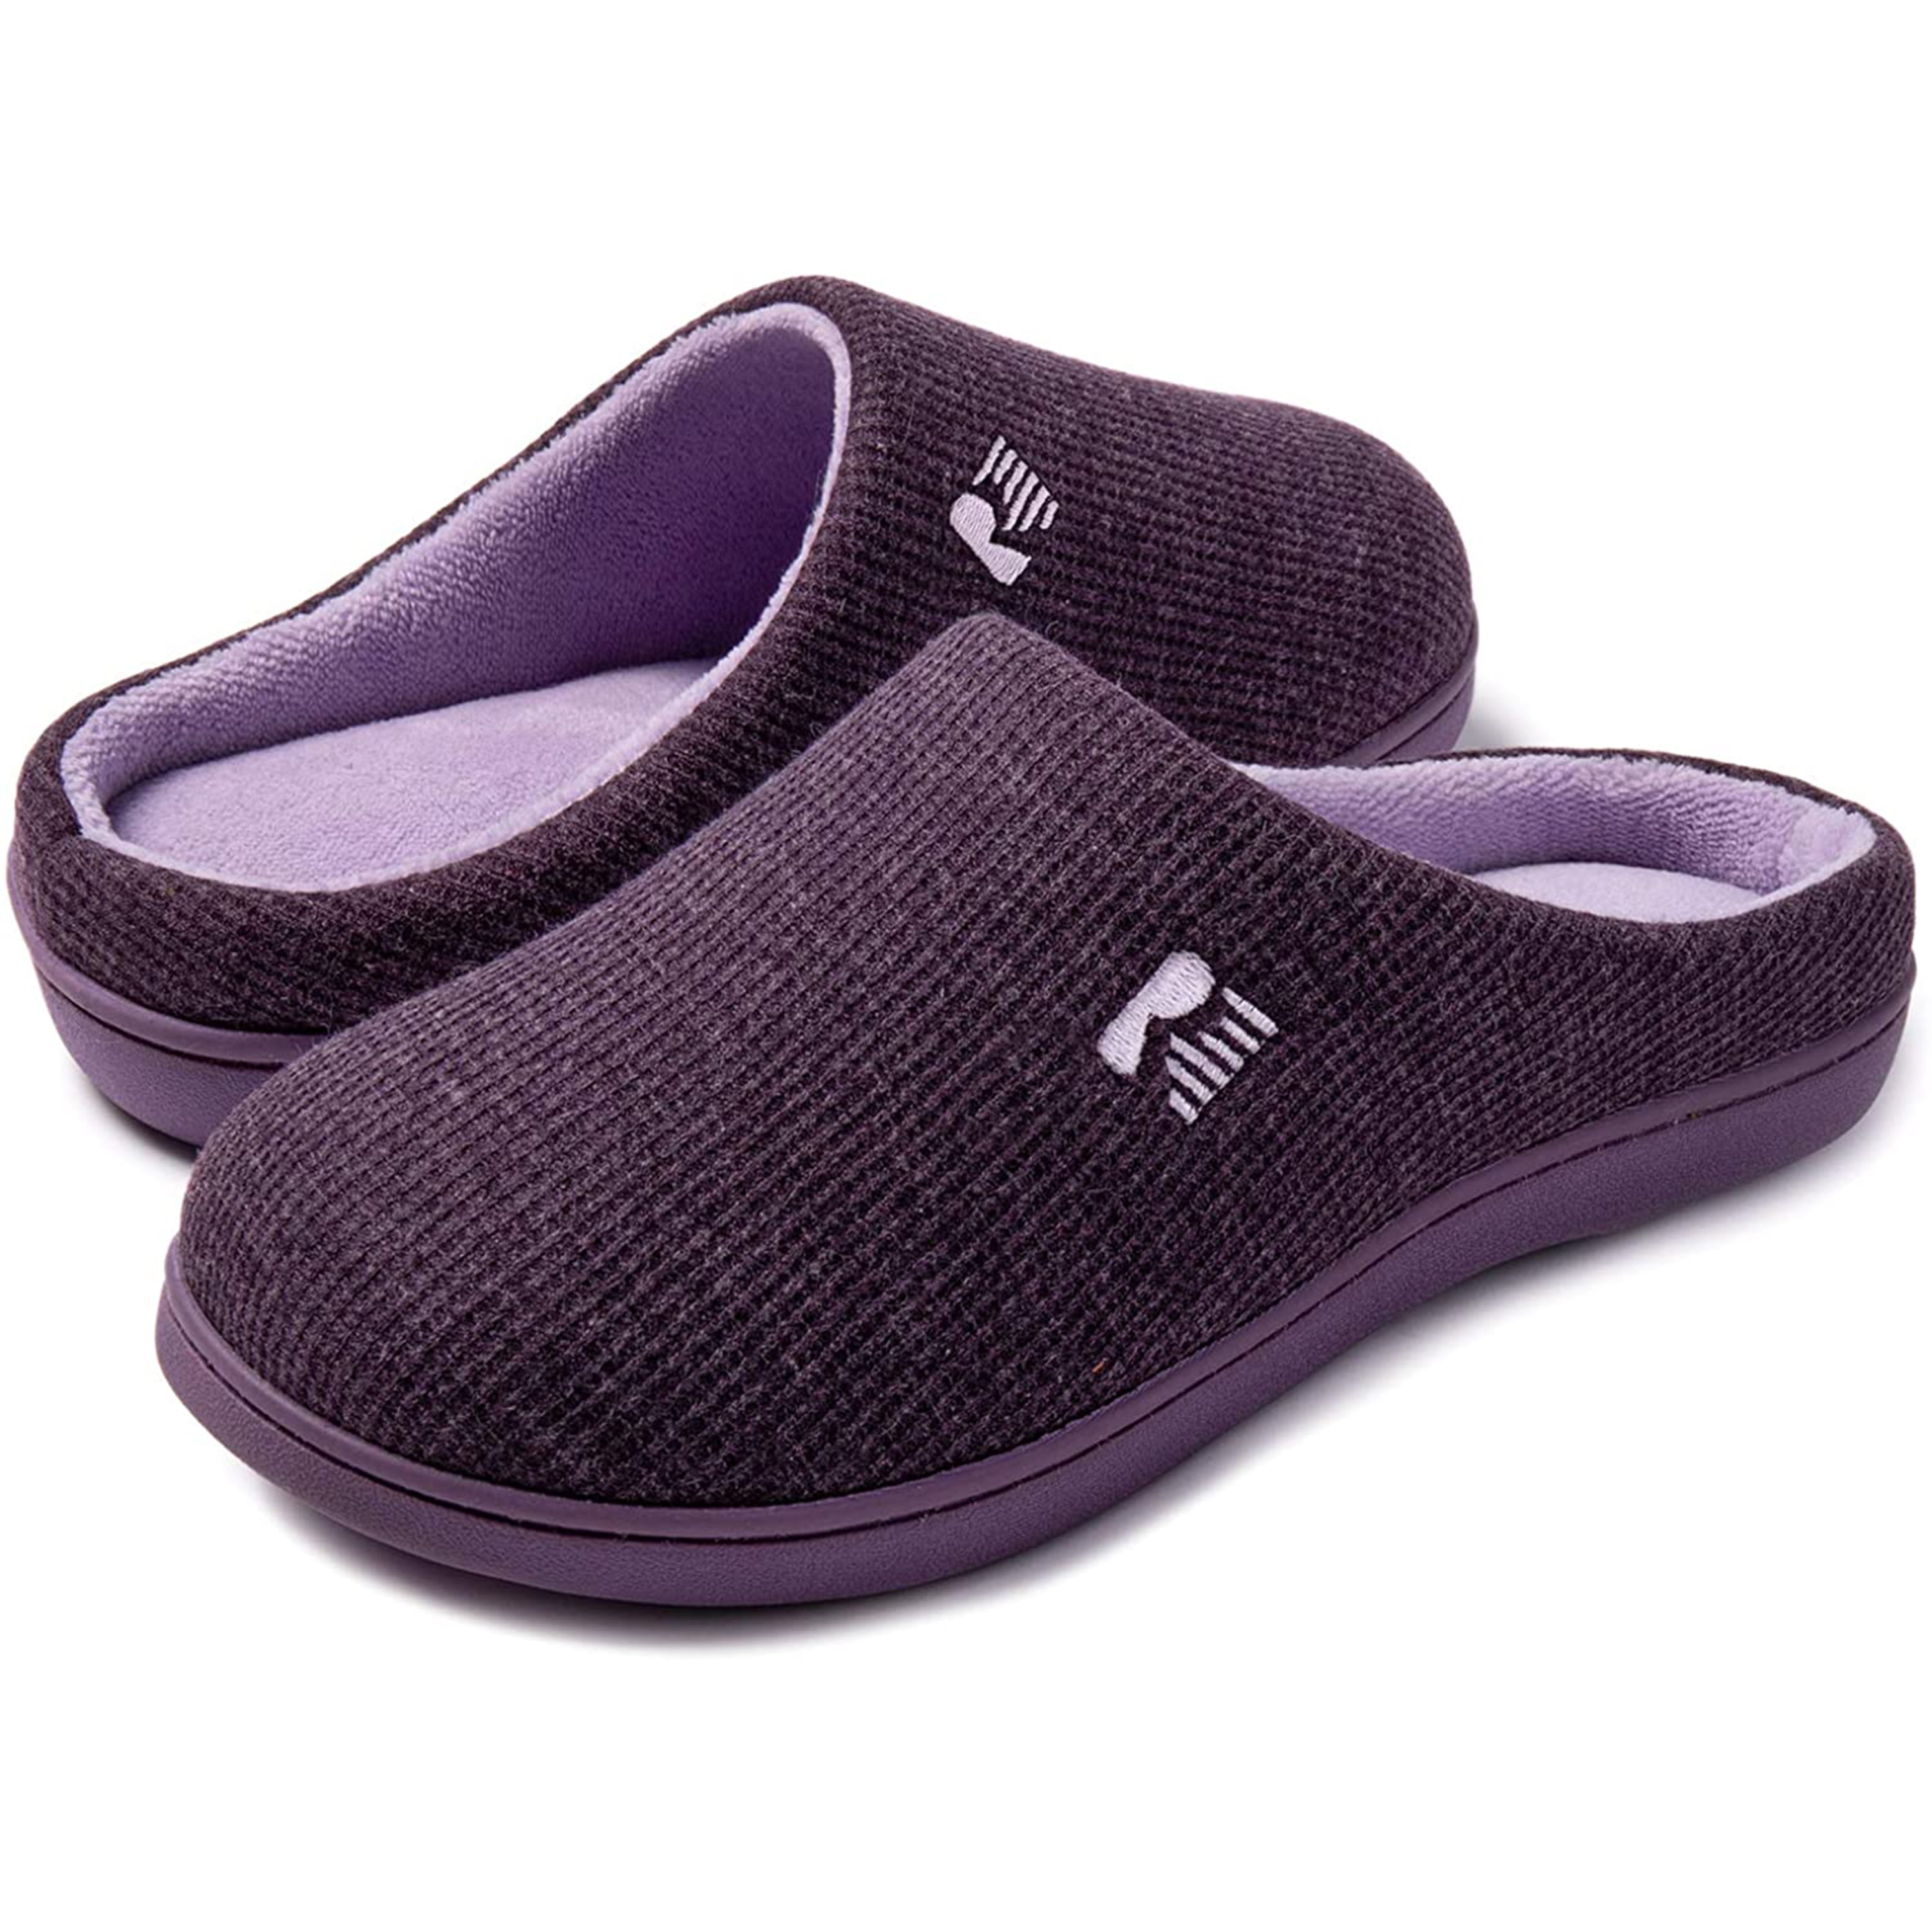 Dearfoams Plaid & Wool Inspired Foldover Slippers with Memory Foam  (Women's) - Walmart.com